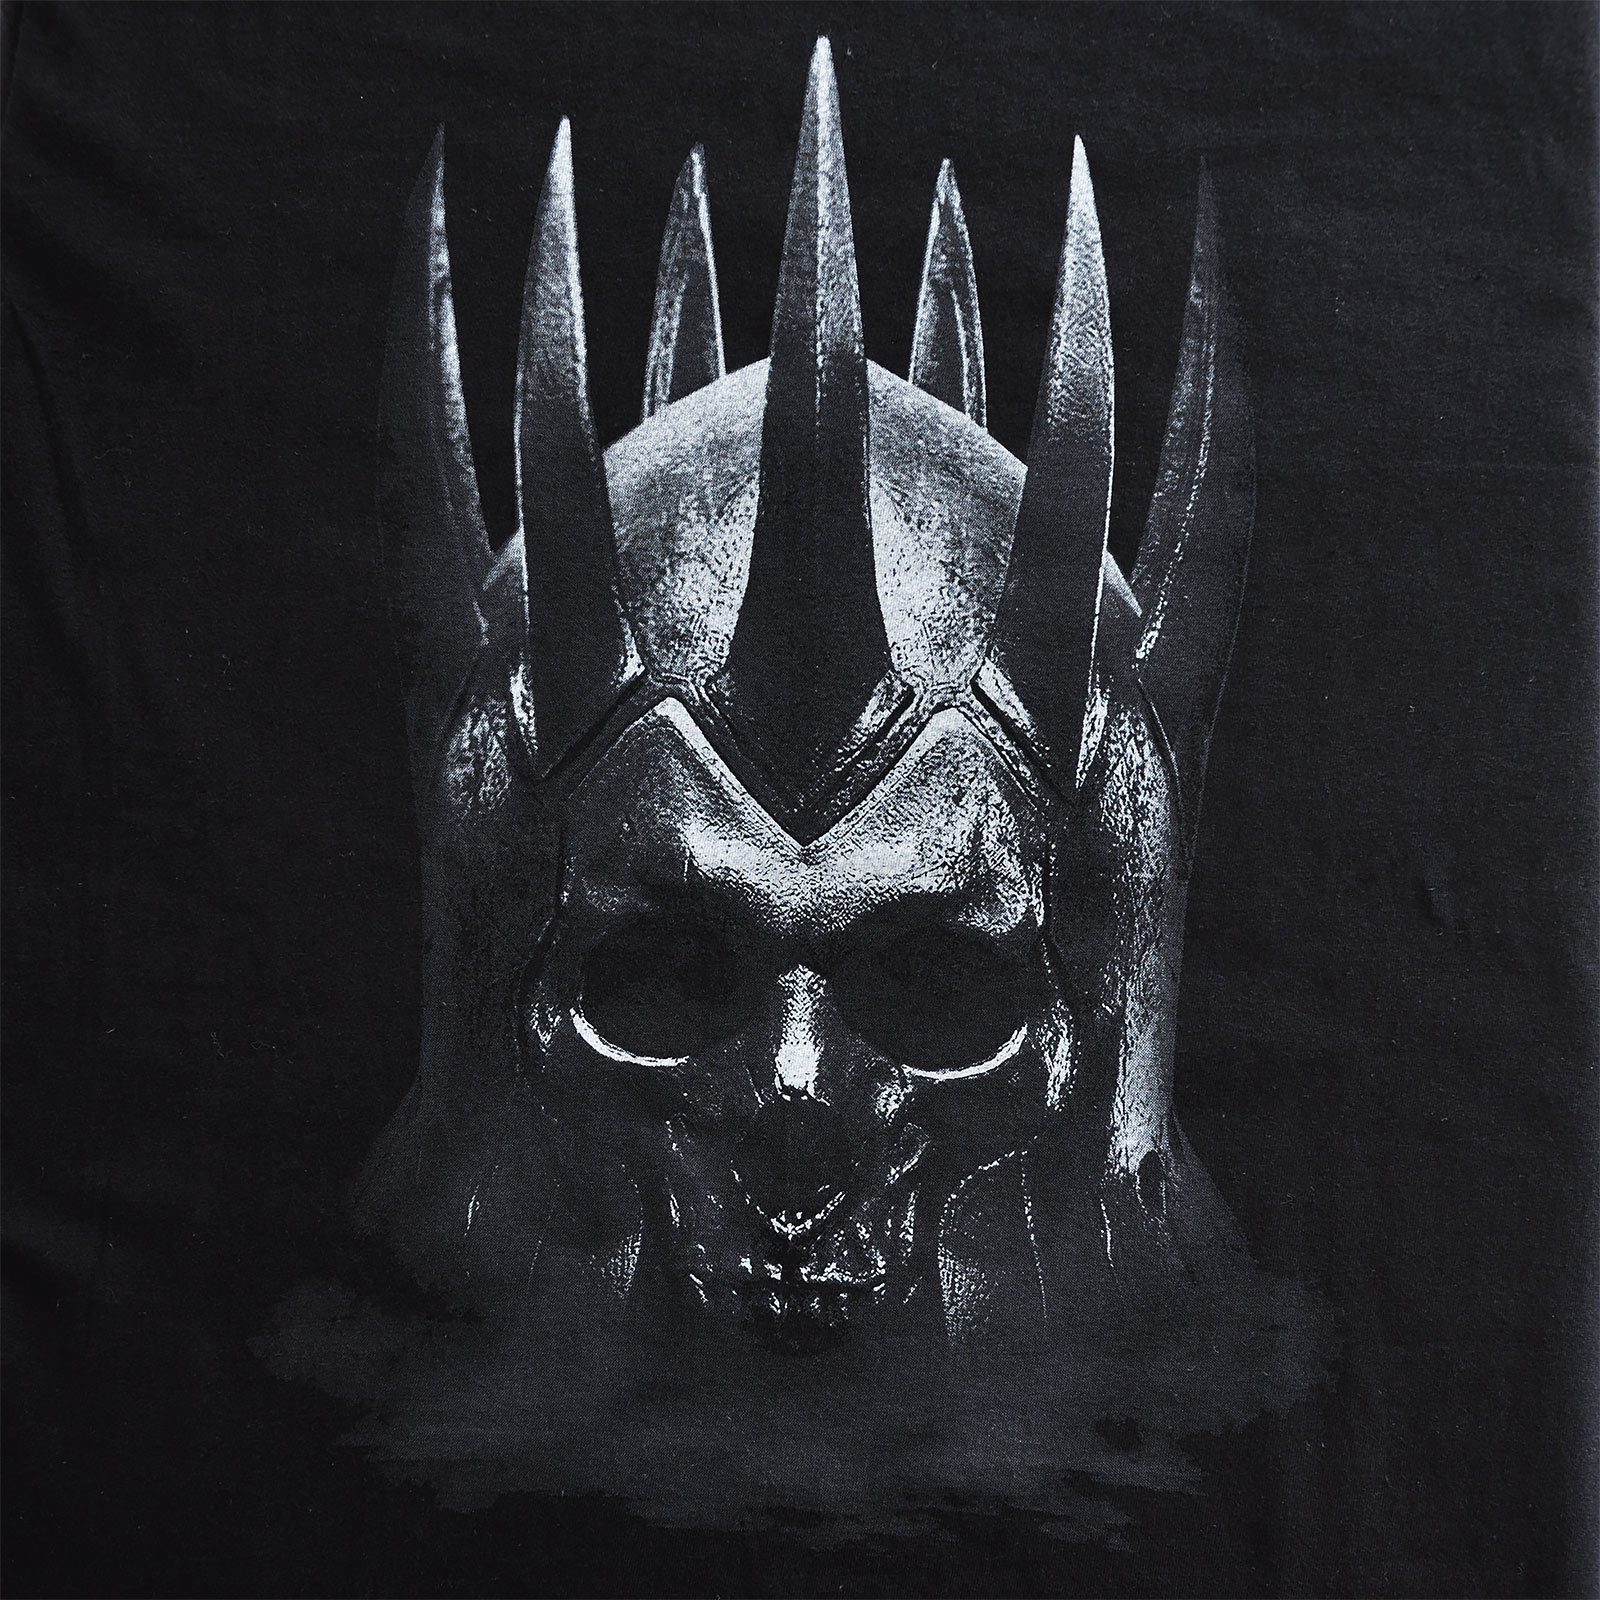 Witcher - Eredin T-Shirt schwarz